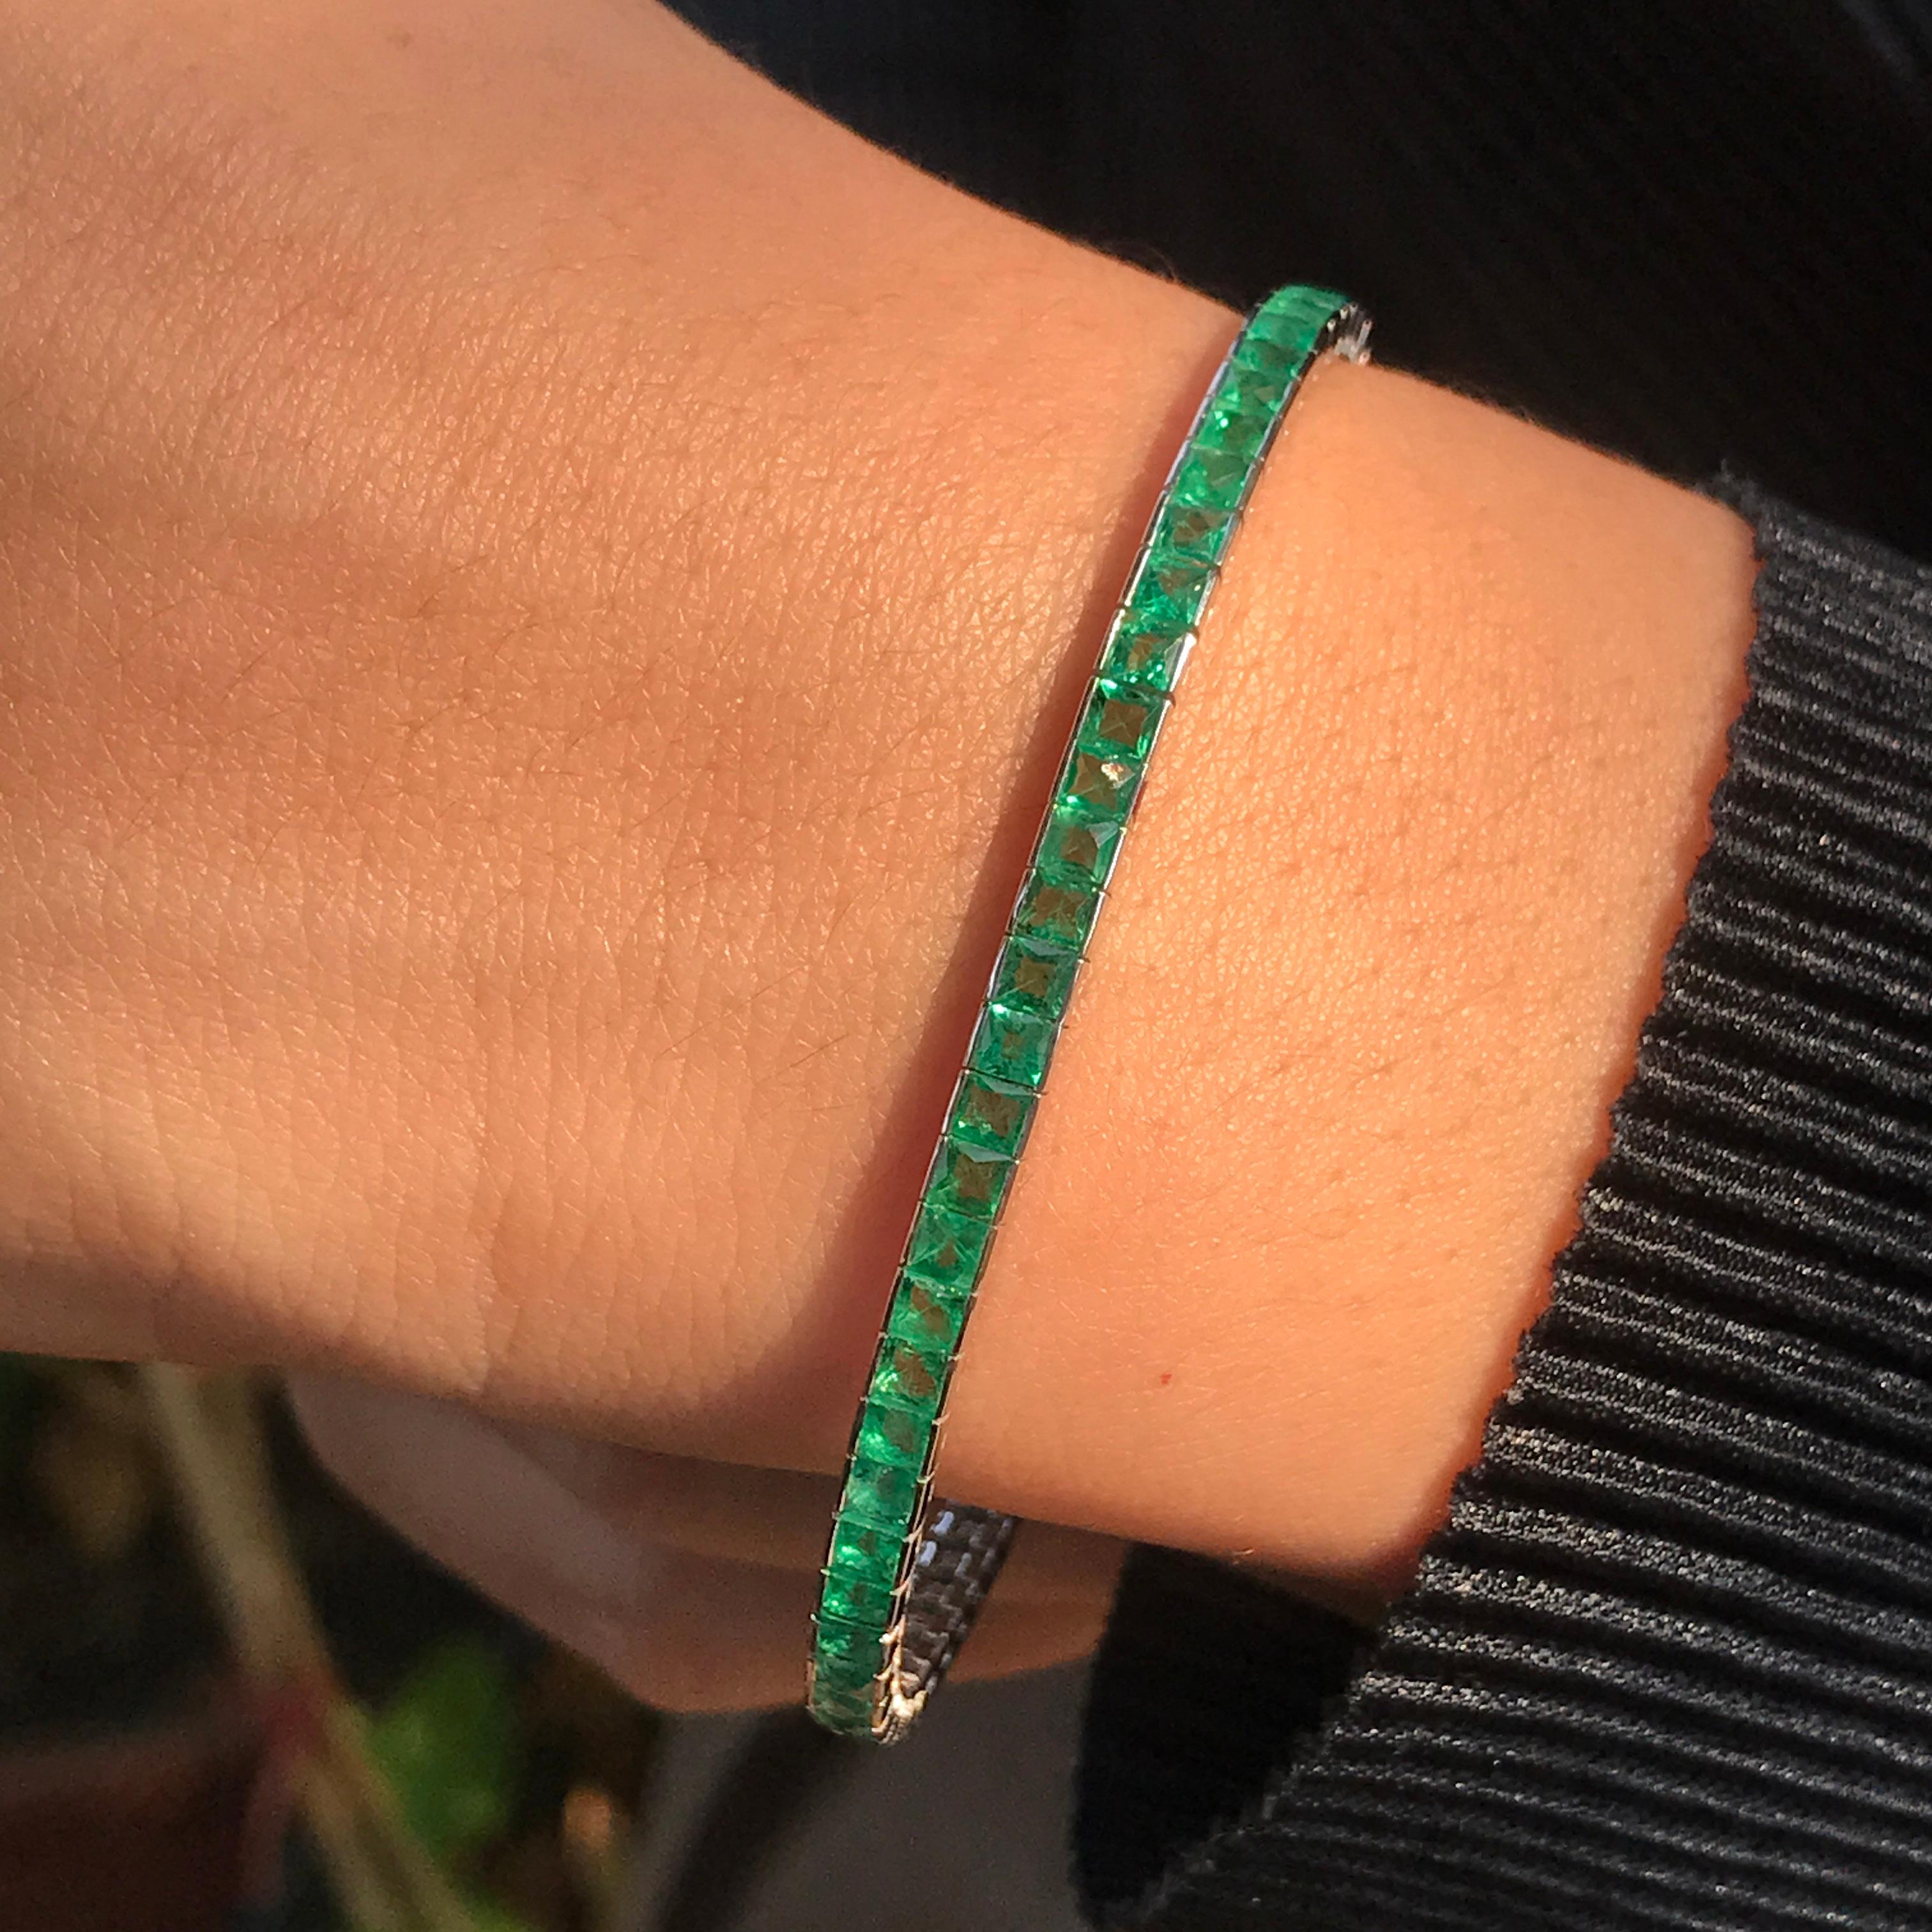 D'une fraîcheur et d'une sophistication enviables, cette coupe princesse  Le bracelet de tennis emerald réinterprète un motif familier pour créer un bracelet de tennis à la fois contemporain et classique. En or blanc 18 carats qui contraste